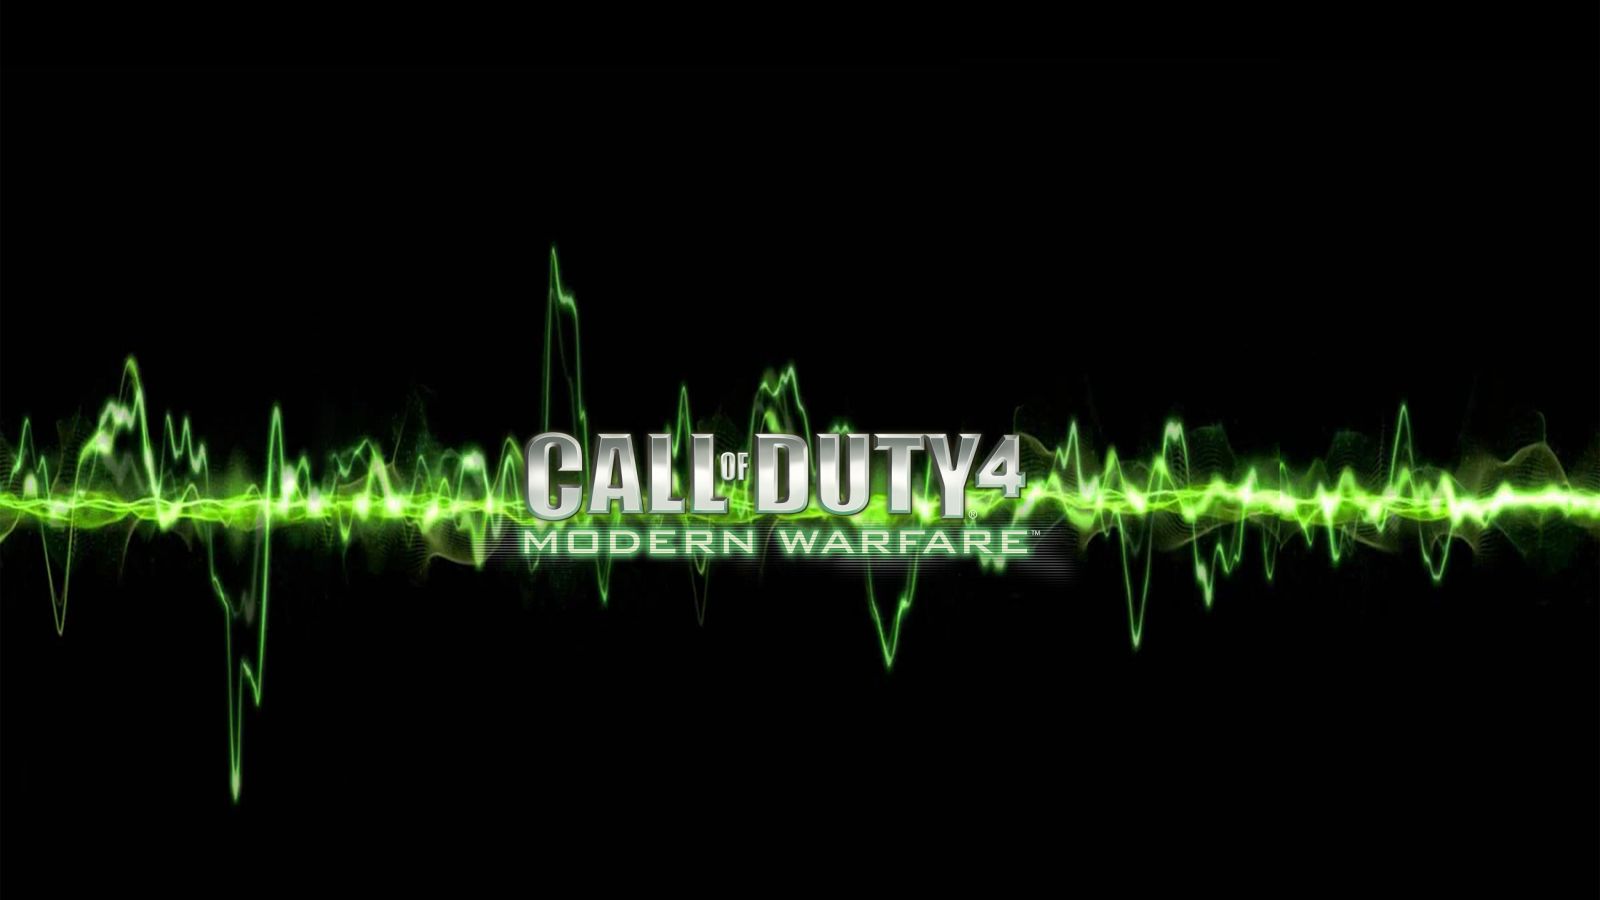 Call of duty 4 modern warfare wallpaper | Wallpaper Wide HD